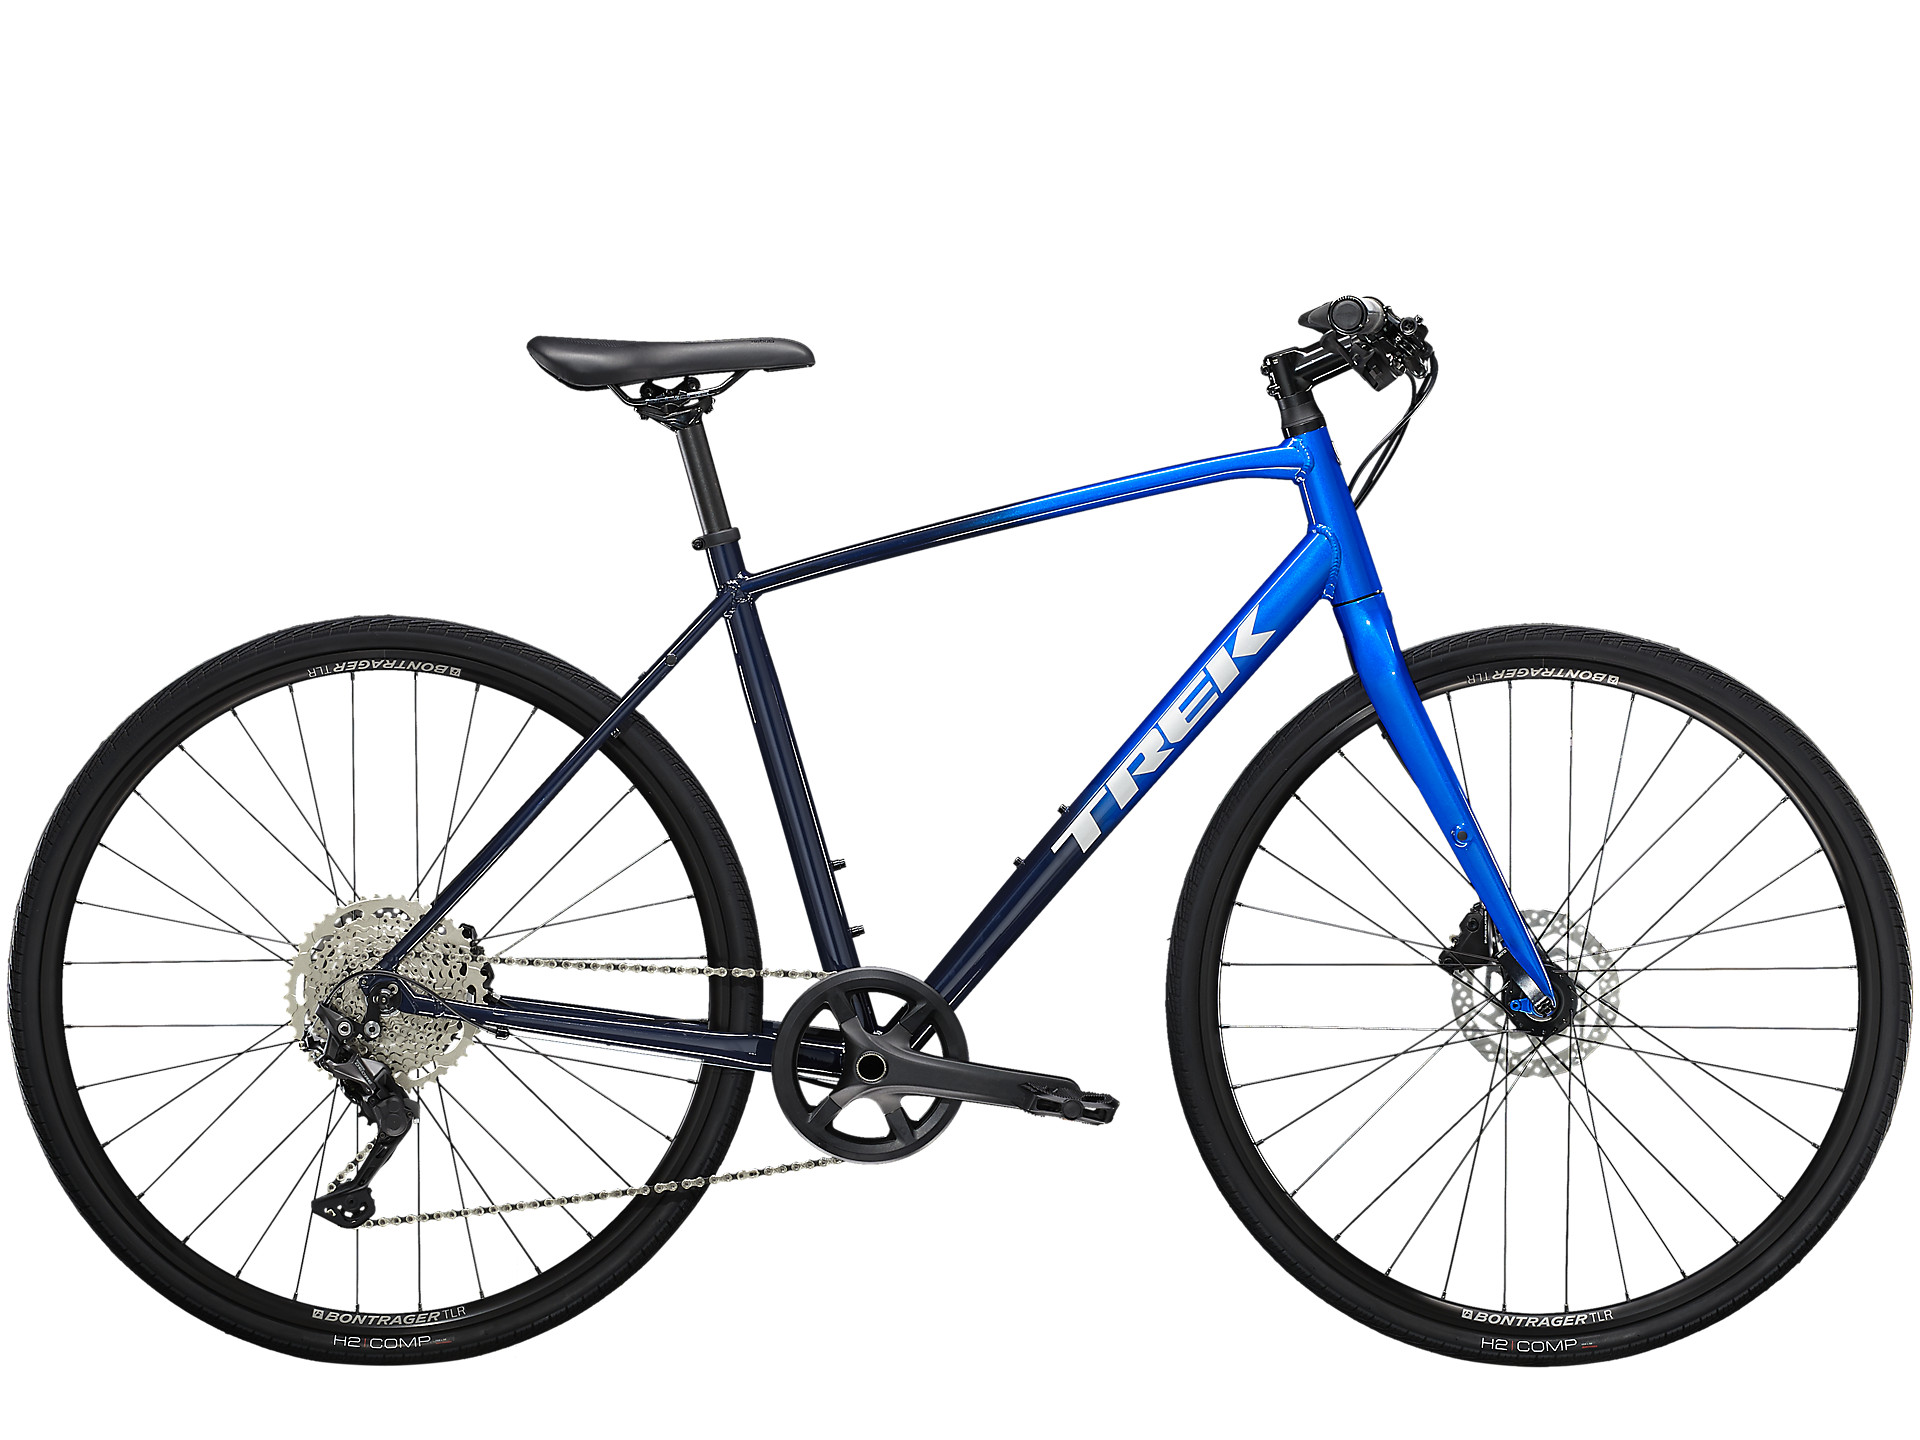 Black/blue Trek FX 3 Disc hybrid bike for men.